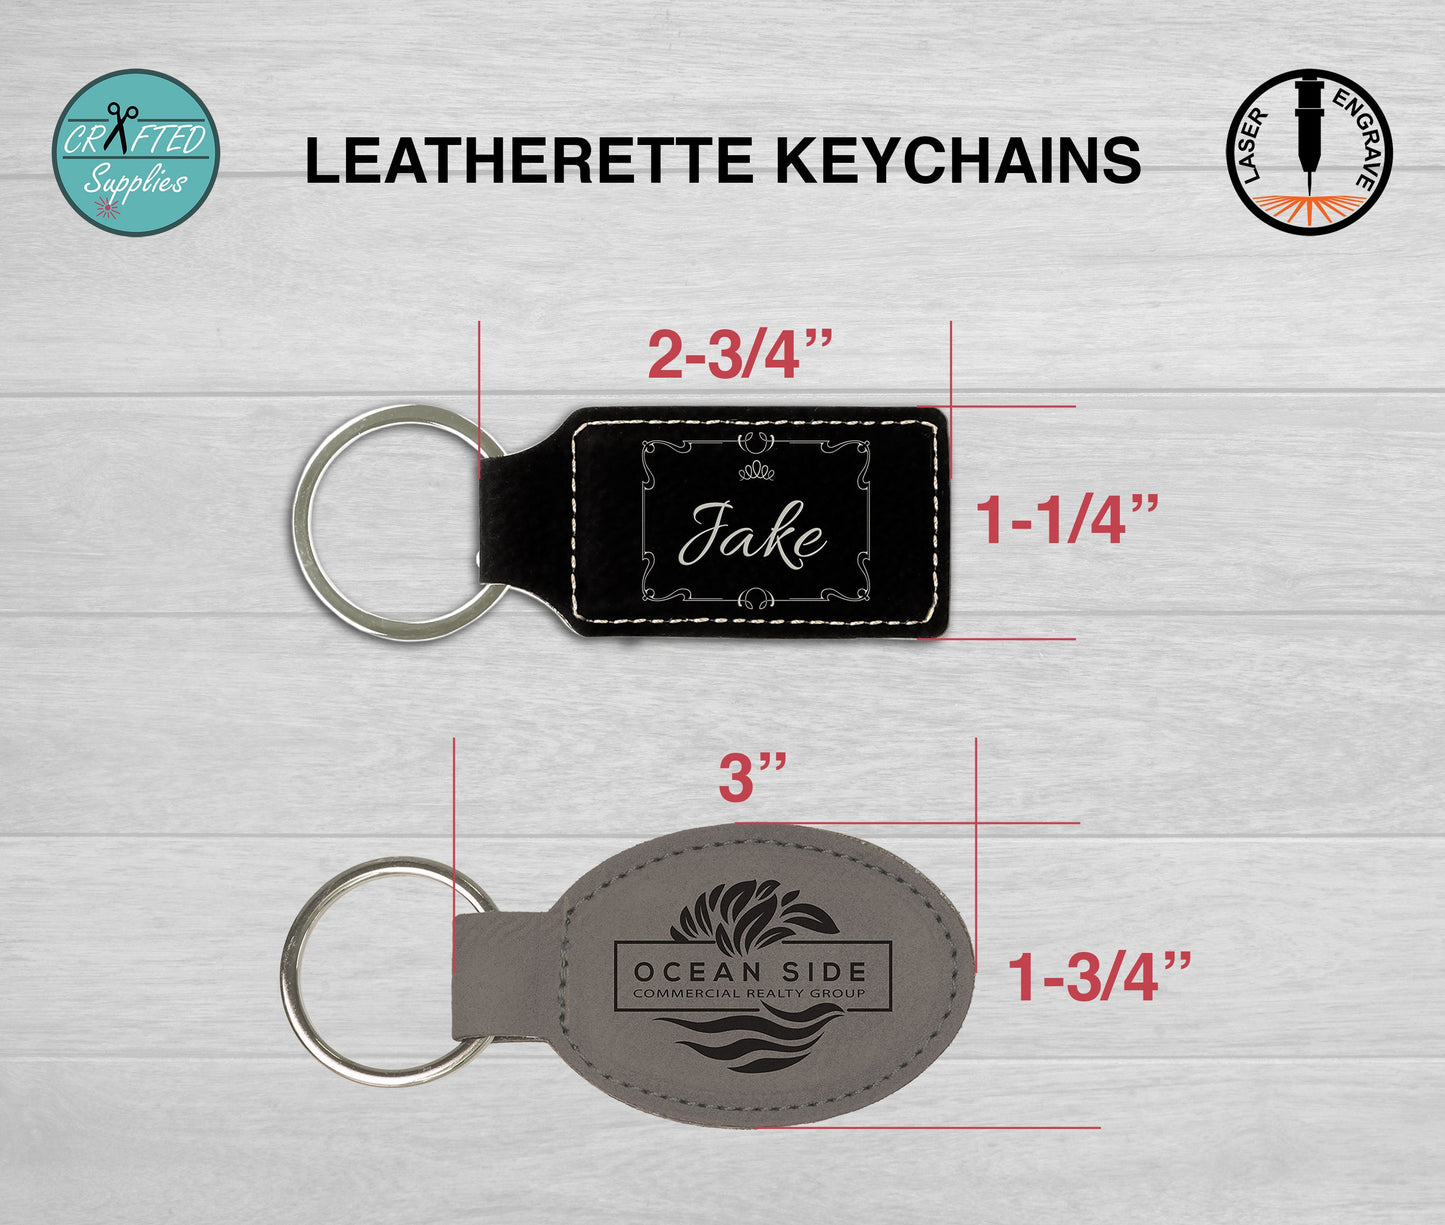 CraftedSupplies Leatherette Keychain, Glowforge Laser Supplies Dark Brown/ Black / Rectangular